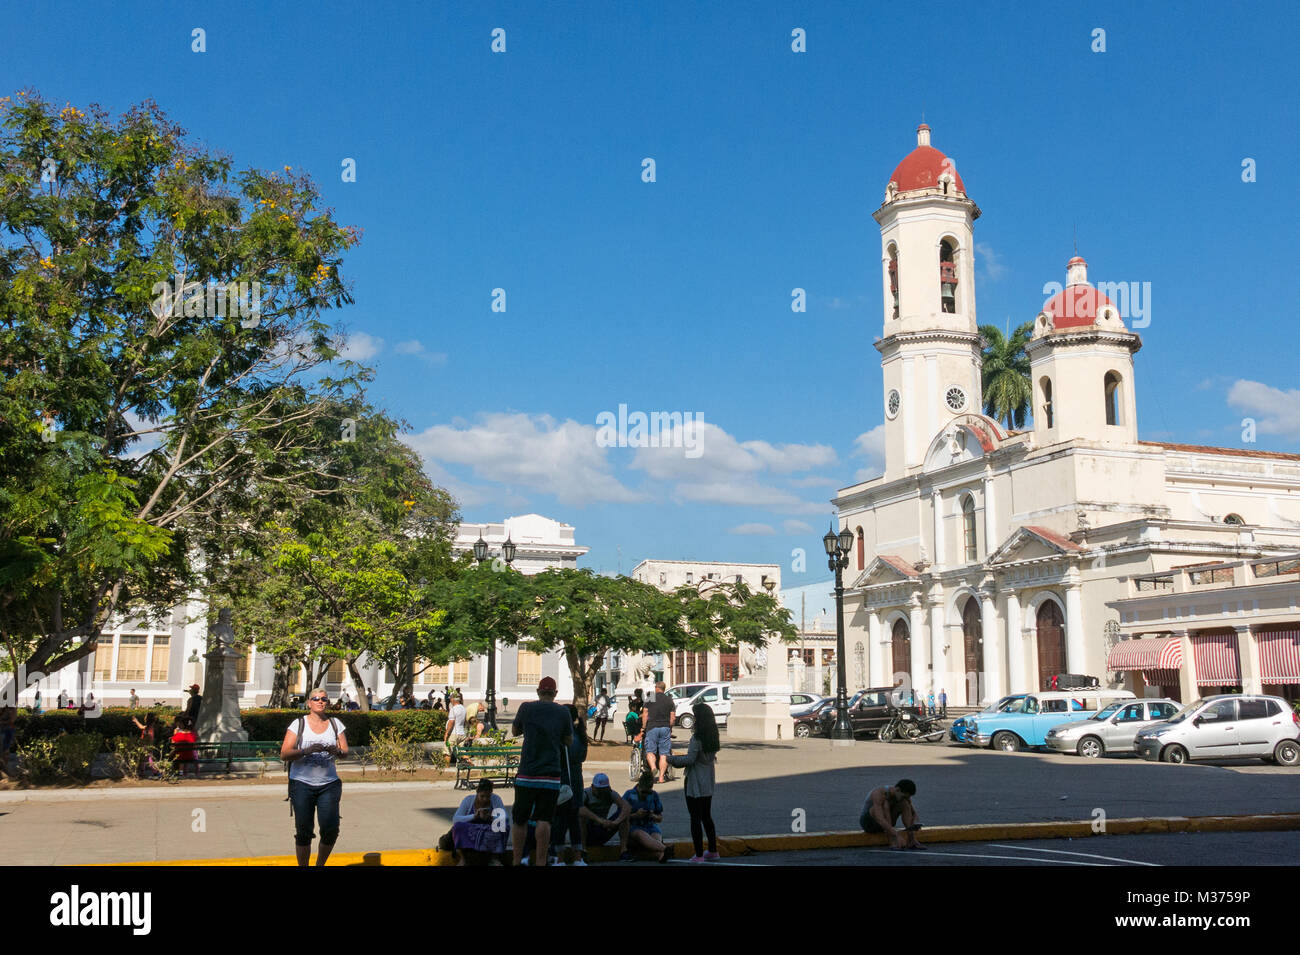 CIENFUEGOS, CUBA : vieilles voitures garées dans le parc Jose Marti, la place principale de Cienfuegos, en face de la Purisima Concepcion cathédrale. Banque D'Images